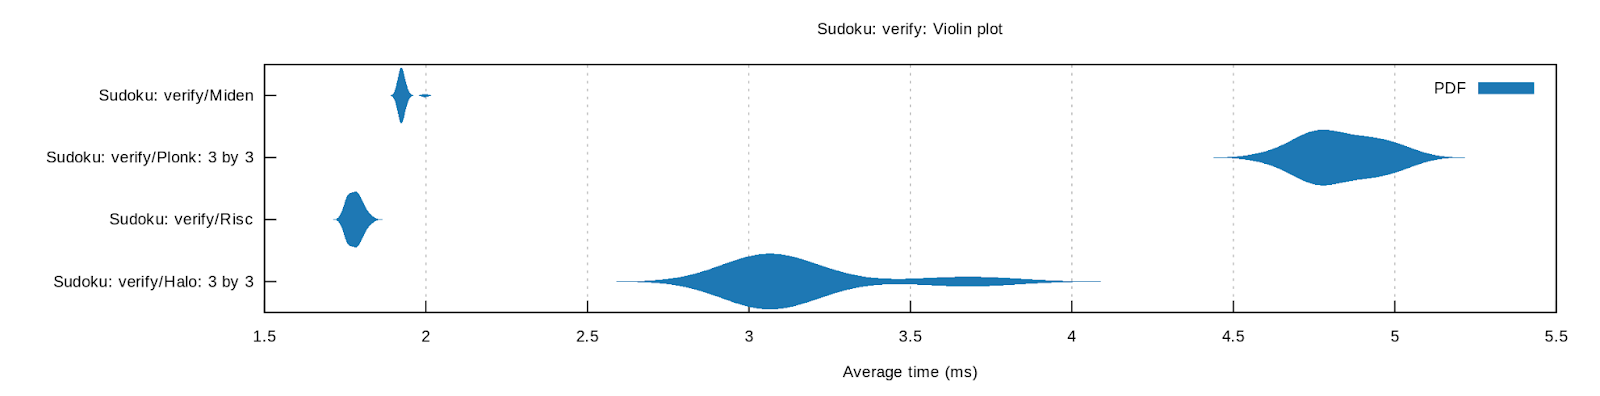 Sudoku: verify: Violin plot